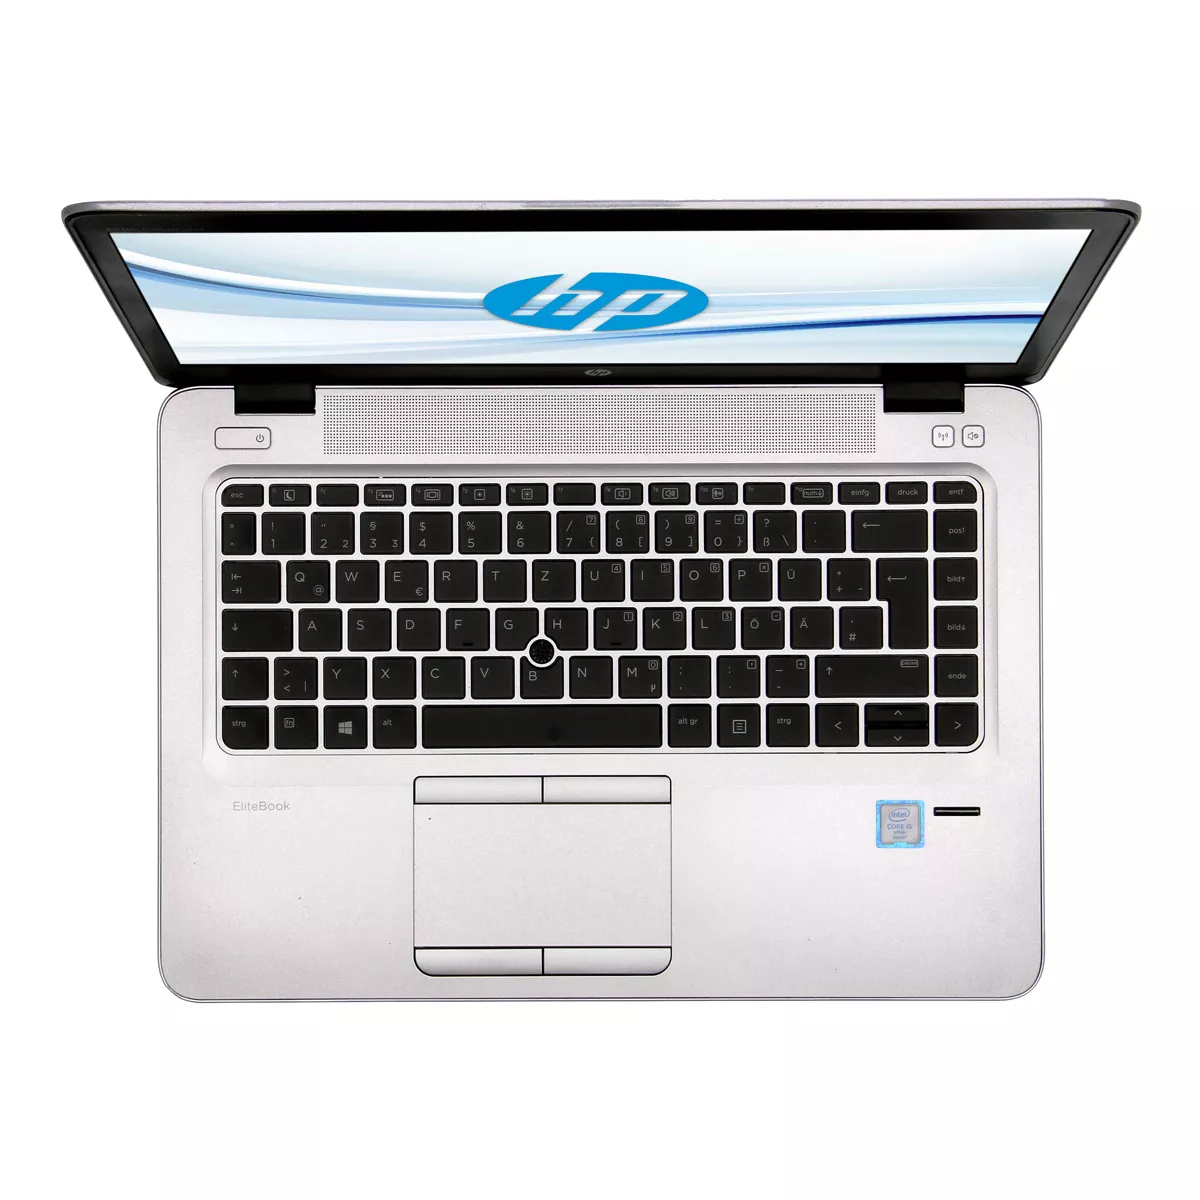 HP EliteBook 840 G3 Core i5 6300U 2,40 GHz 8 GB 240 GB Webcam A+